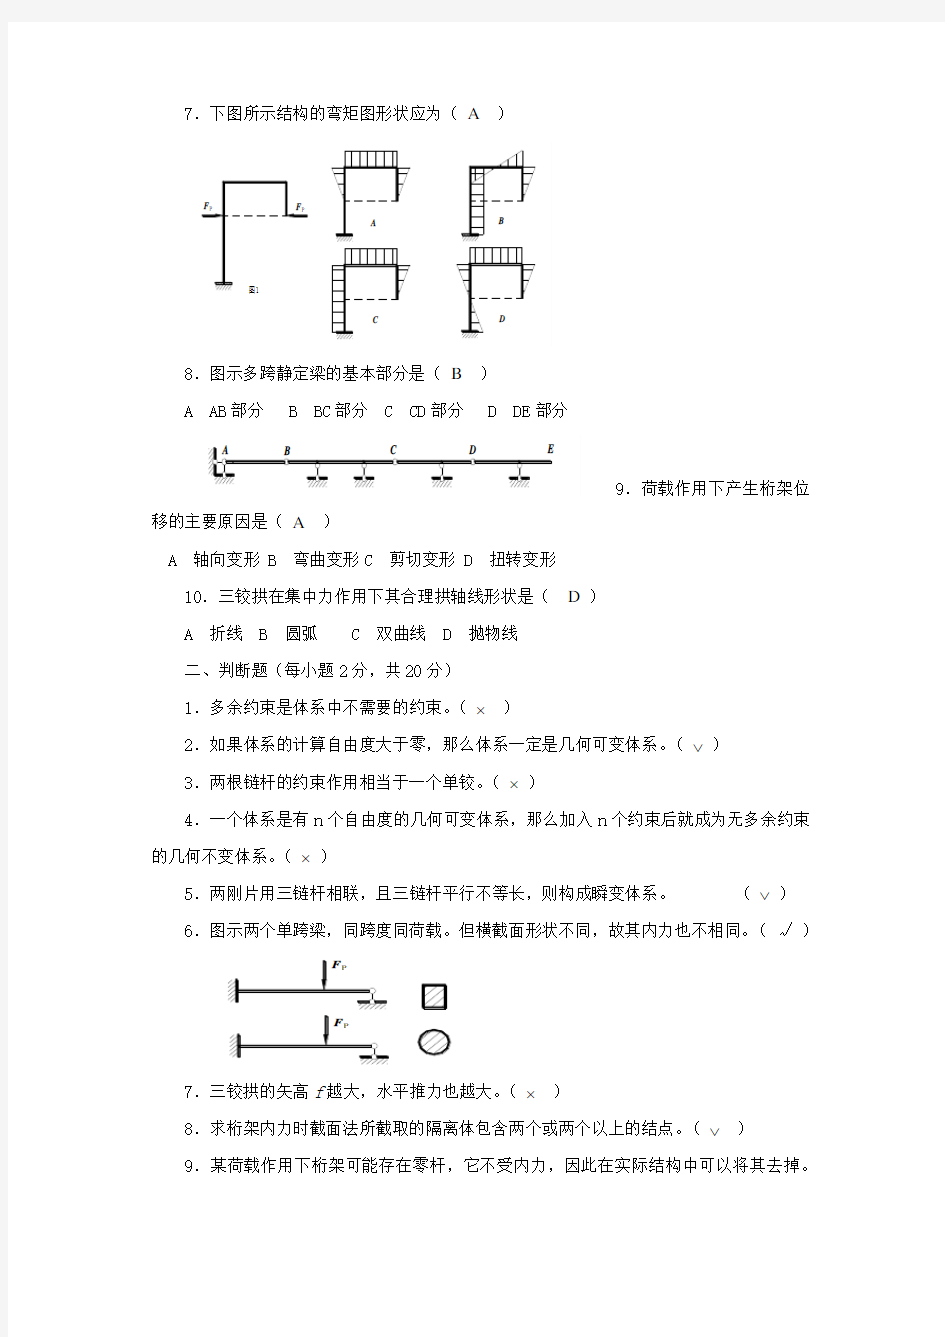 土木工程力学形成性考核册(作业一)